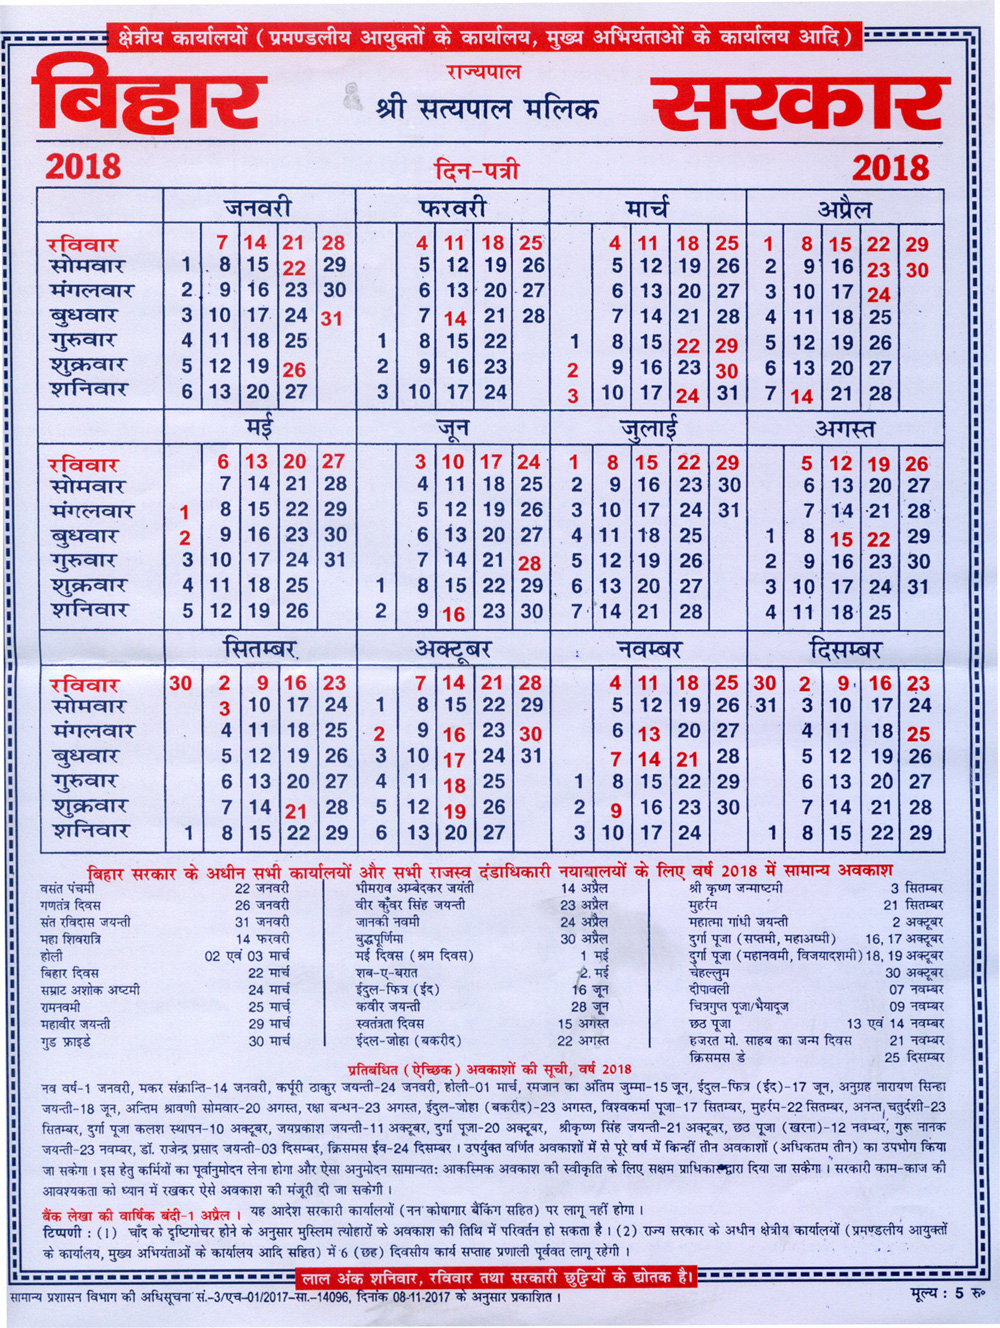 Bihar Government Holiday Calendar 2020 | Calendar For Planning within Bihar Government Holiday Calendar